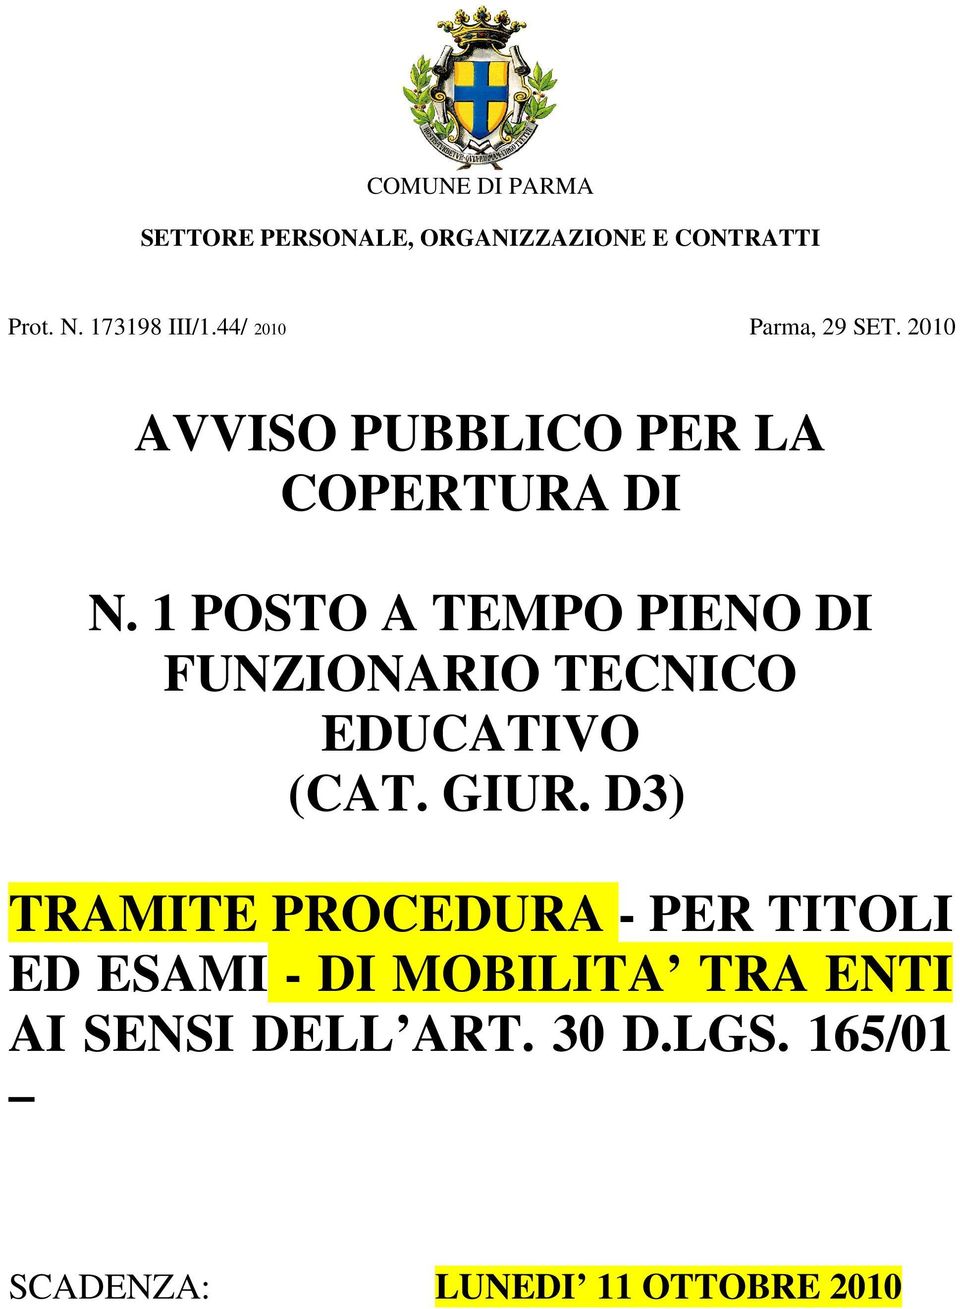 1 POSTO A TEMPO PIENO DI FUNZIONARIO TECNICO EDUCATIVO (CAT. GIUR.